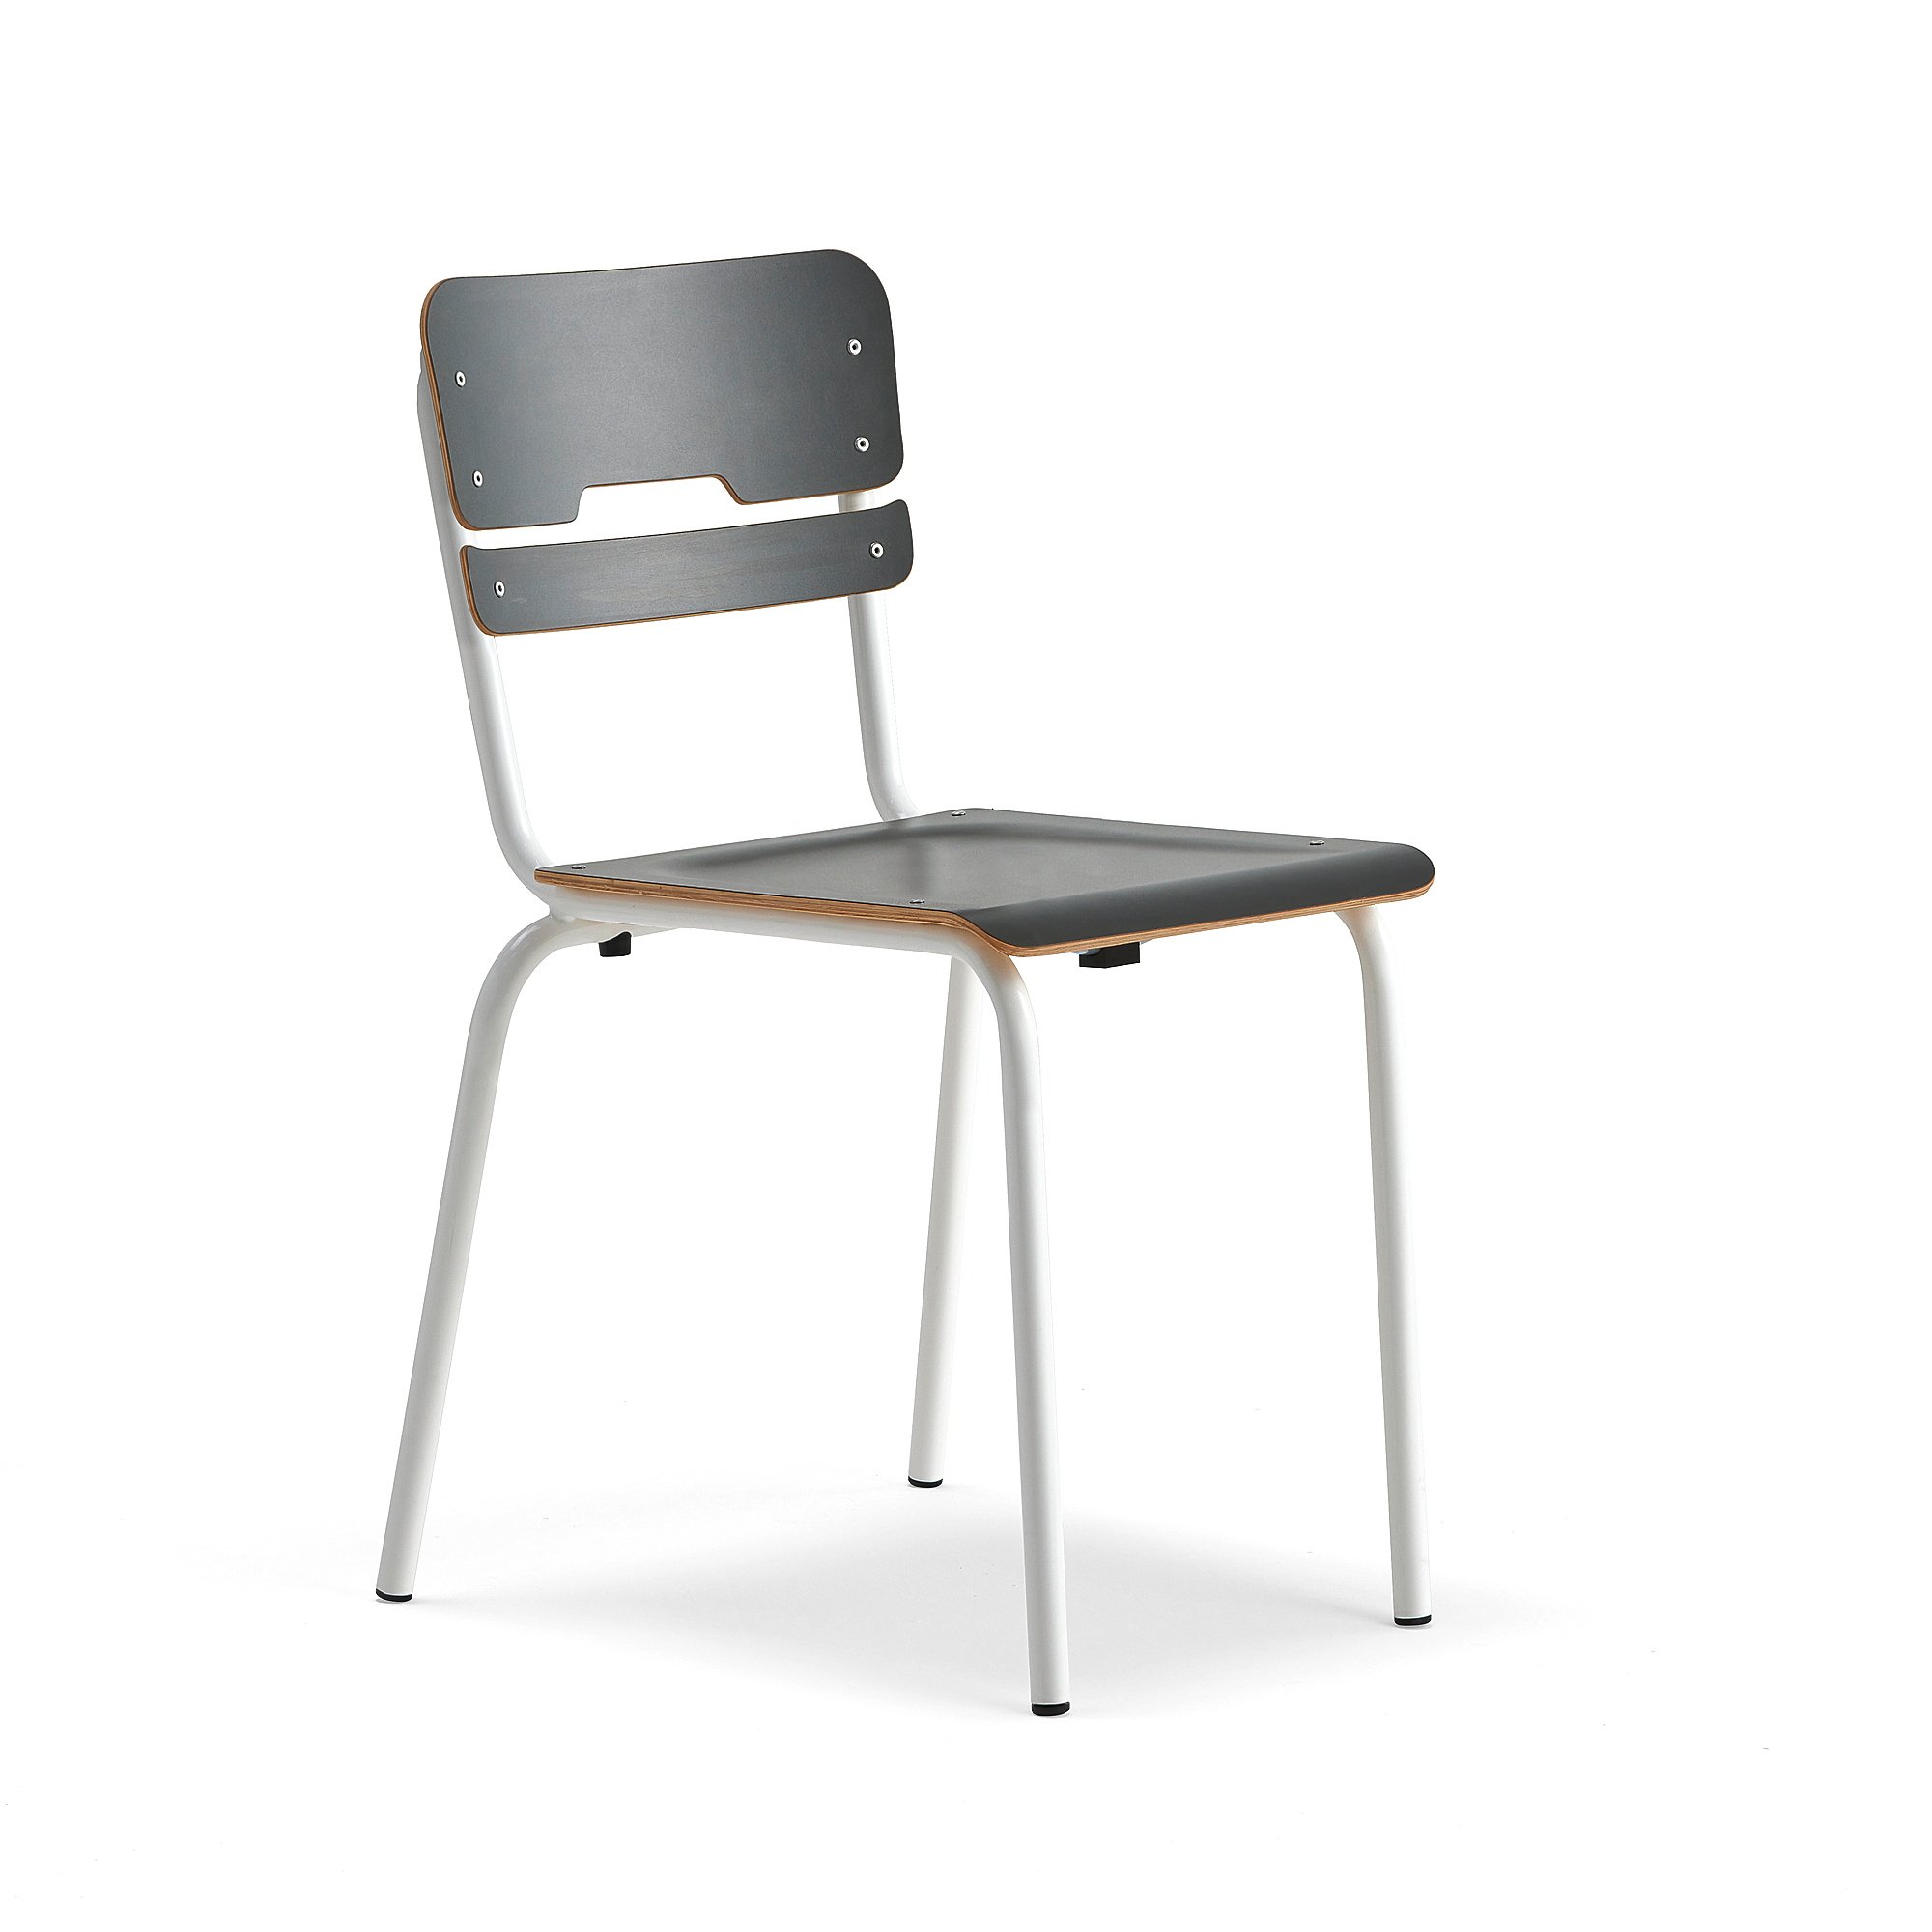 Levně Školní židle SCIENTIA, sedák 390x390 mm, výška 460 mm, bílá/antracitová